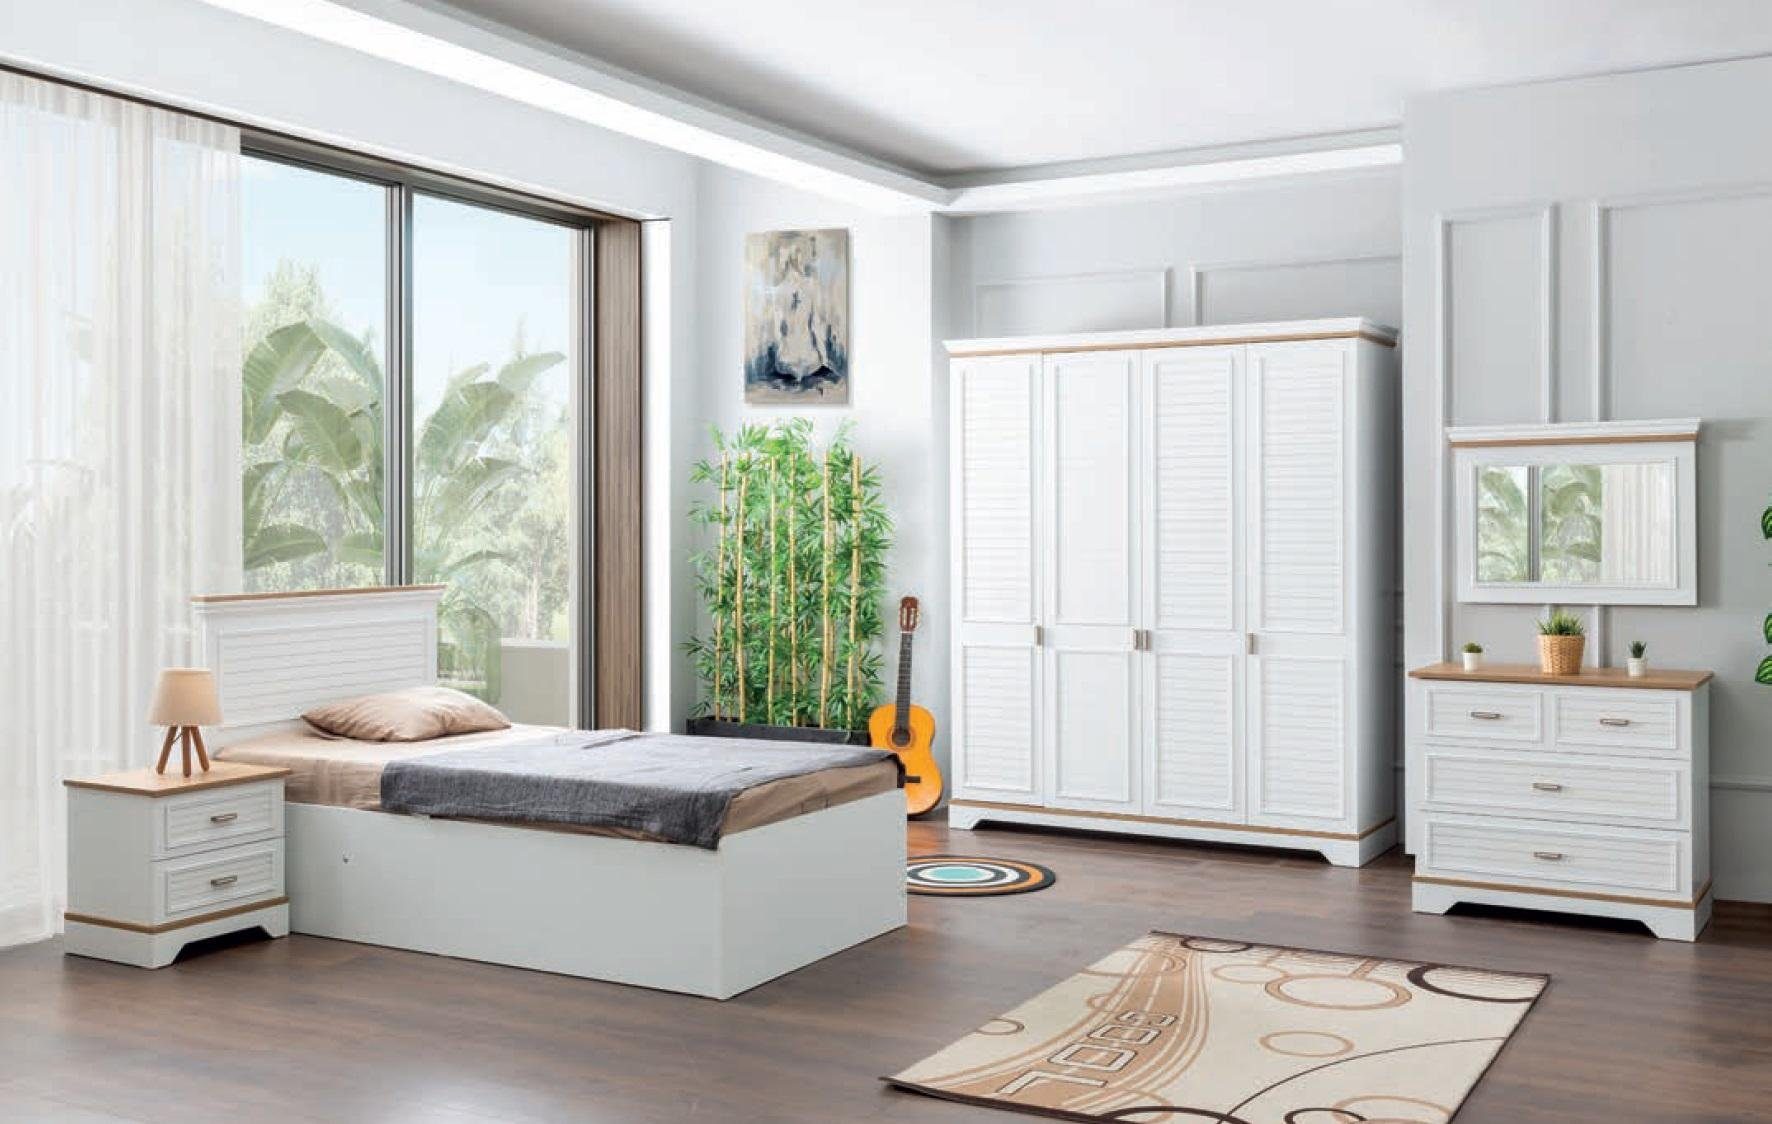 JVmoebel Kommode Weiße Kommode Europe in Modernes luxus Schrank Design Made Wohnzimmermöbel (Kommode)